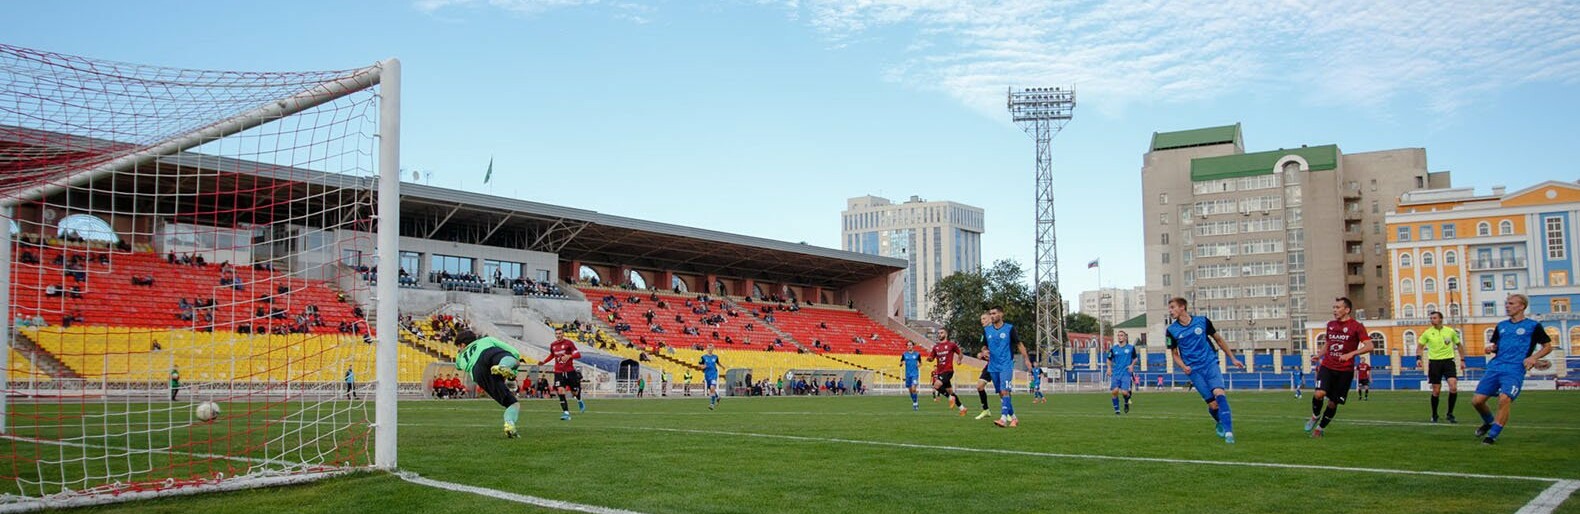 Стадион «Салют» в Белгороде передали в собственность области для проведения ремонта